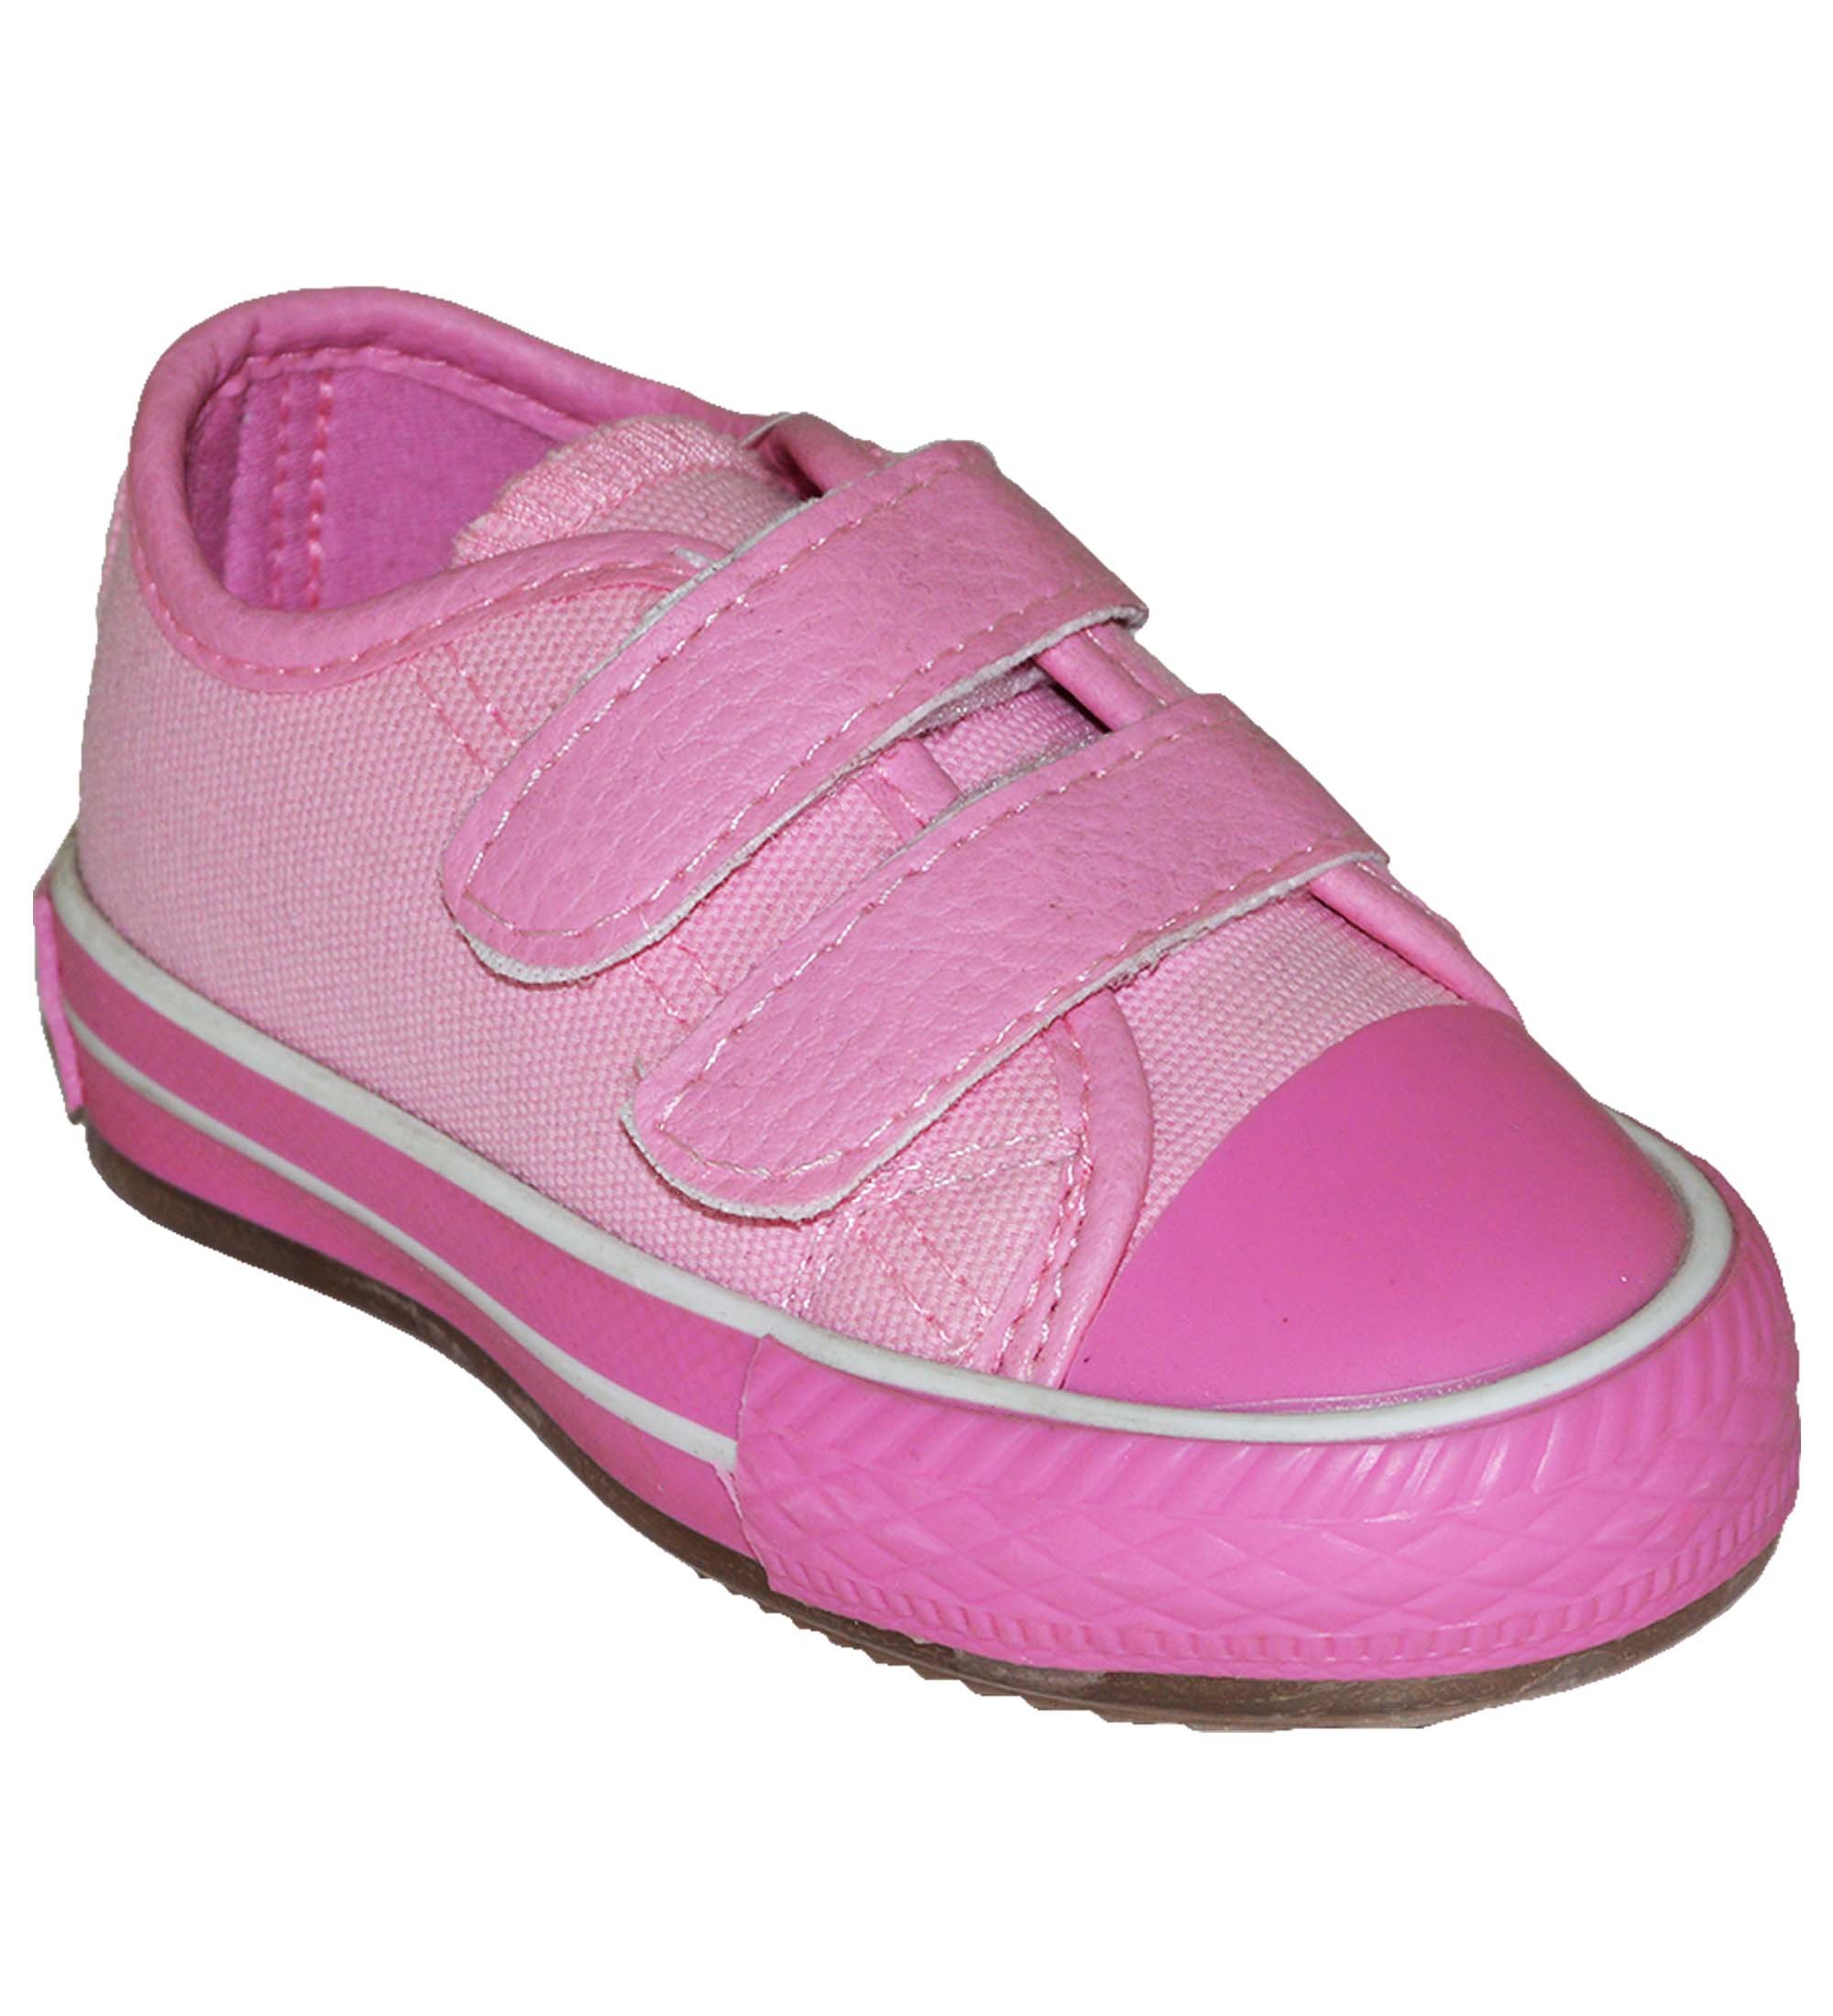 Bebe Spor Ayakkabı - Pembe